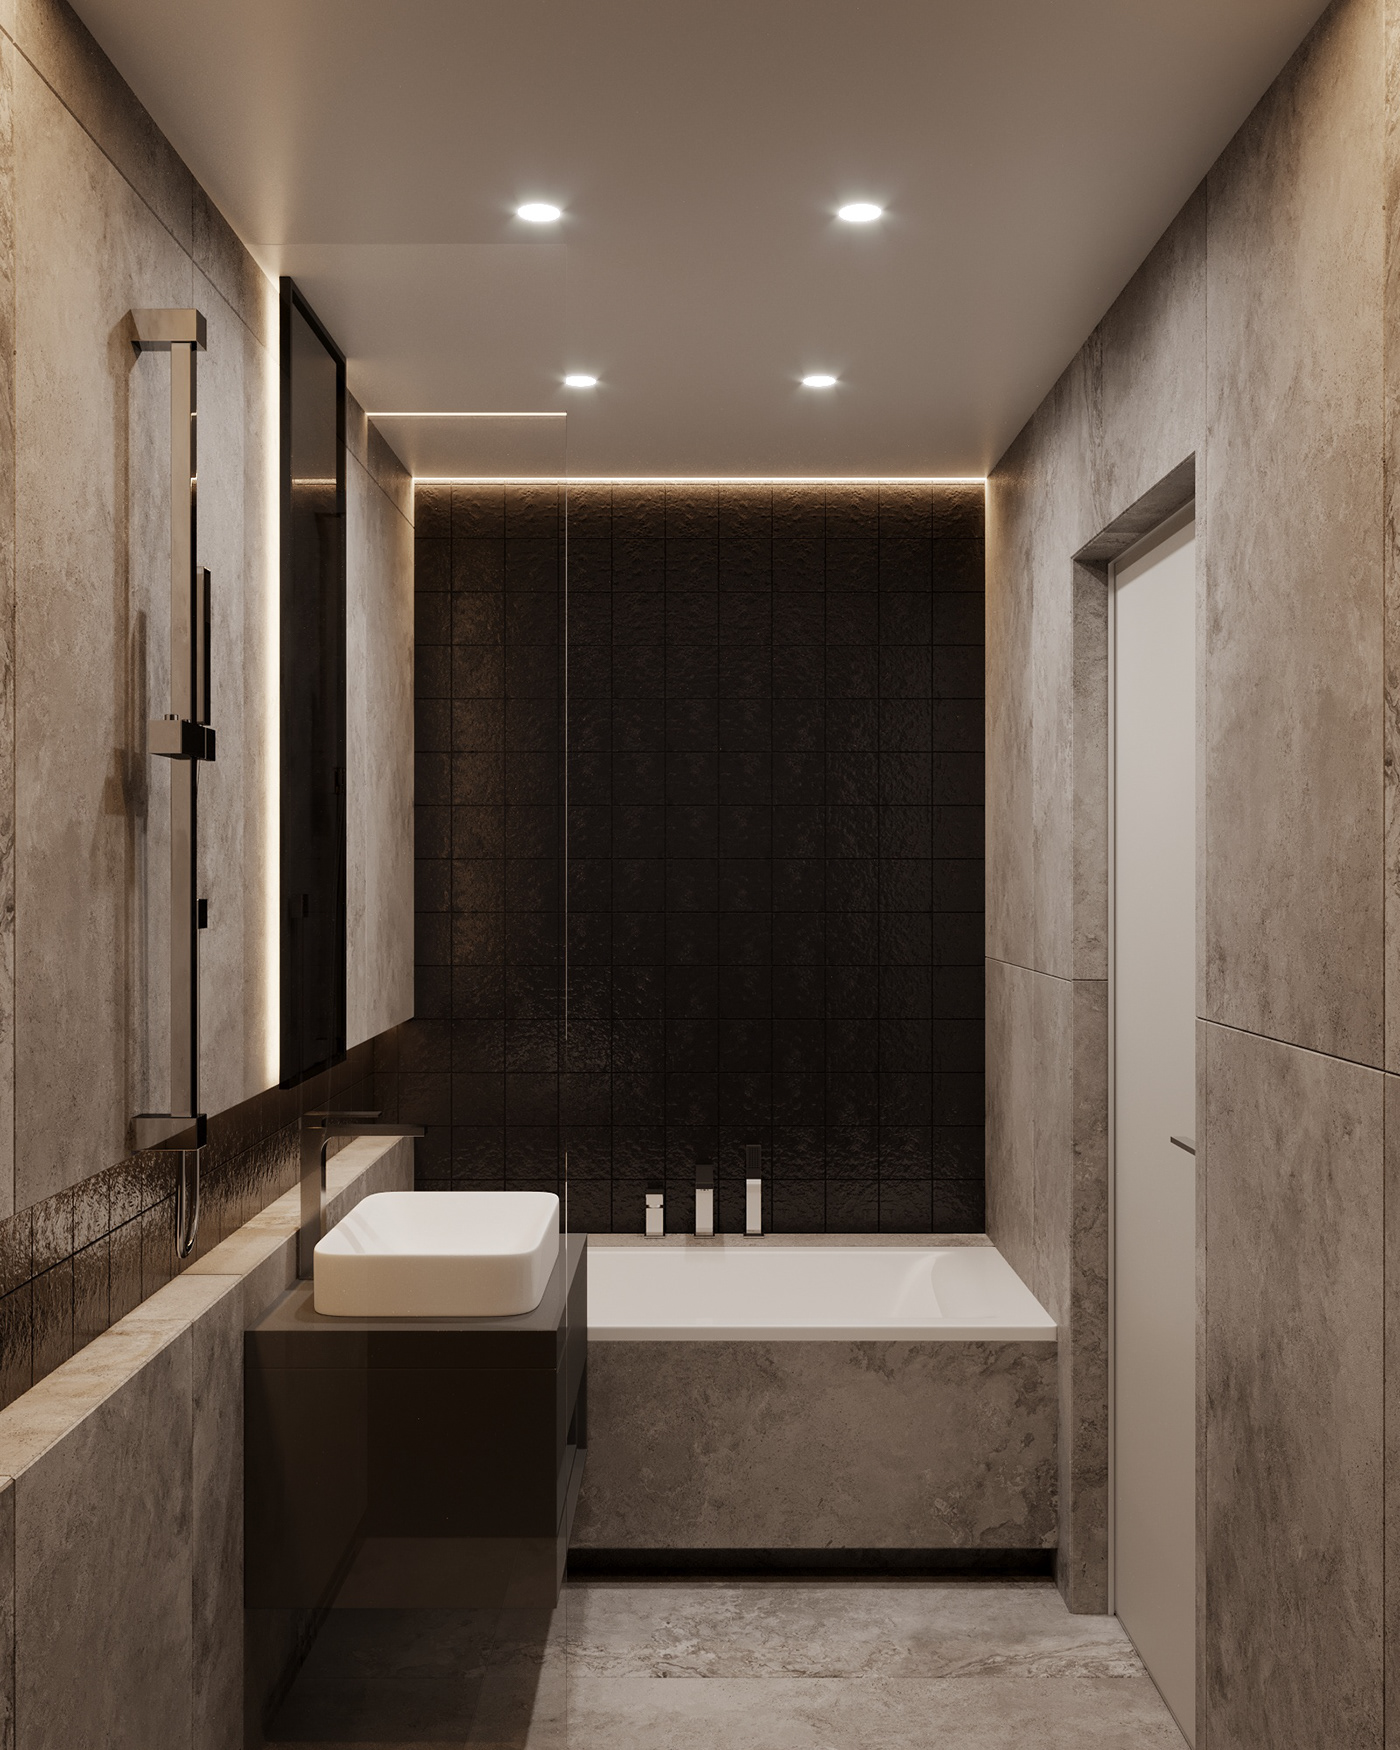 bathroom bathroom design bathroomdesign bathroom interior room room design Interior wood tiles tile